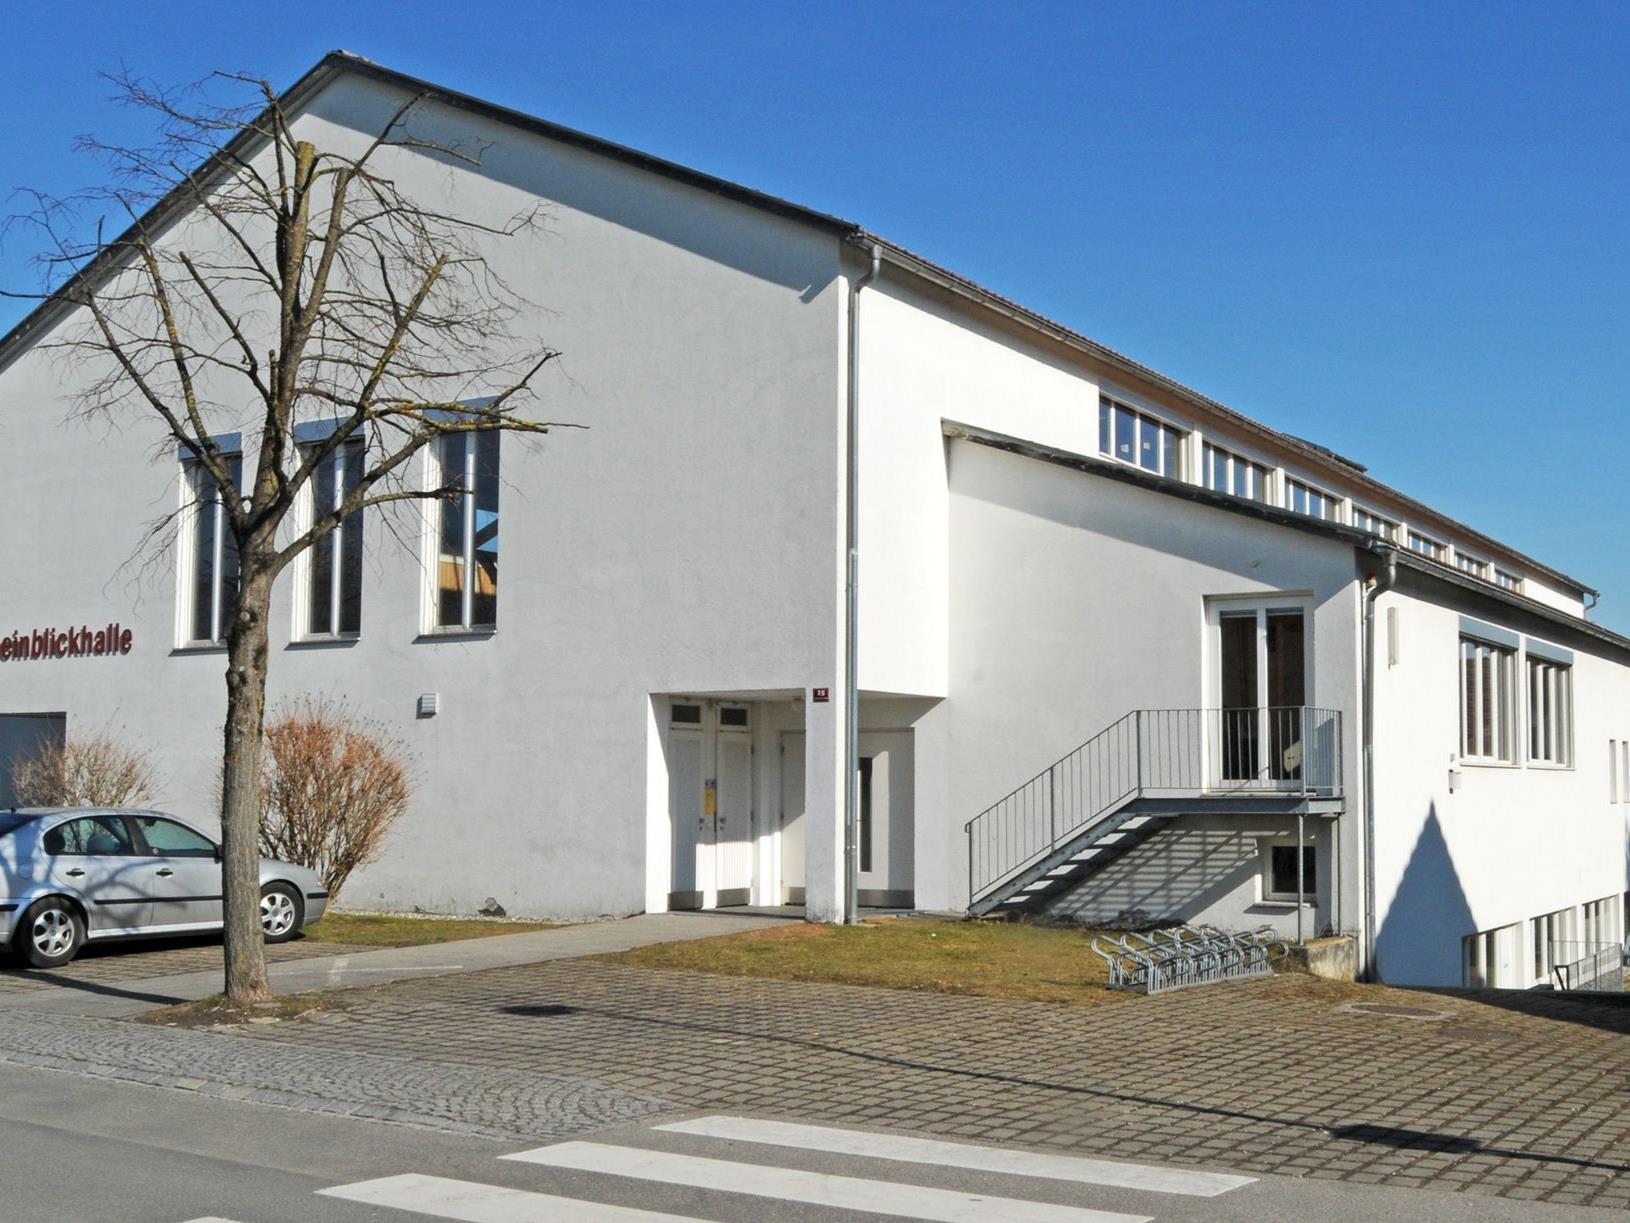 Heuer erfolgt die Außensanierung der Rheinblickhalle in Gaißau.